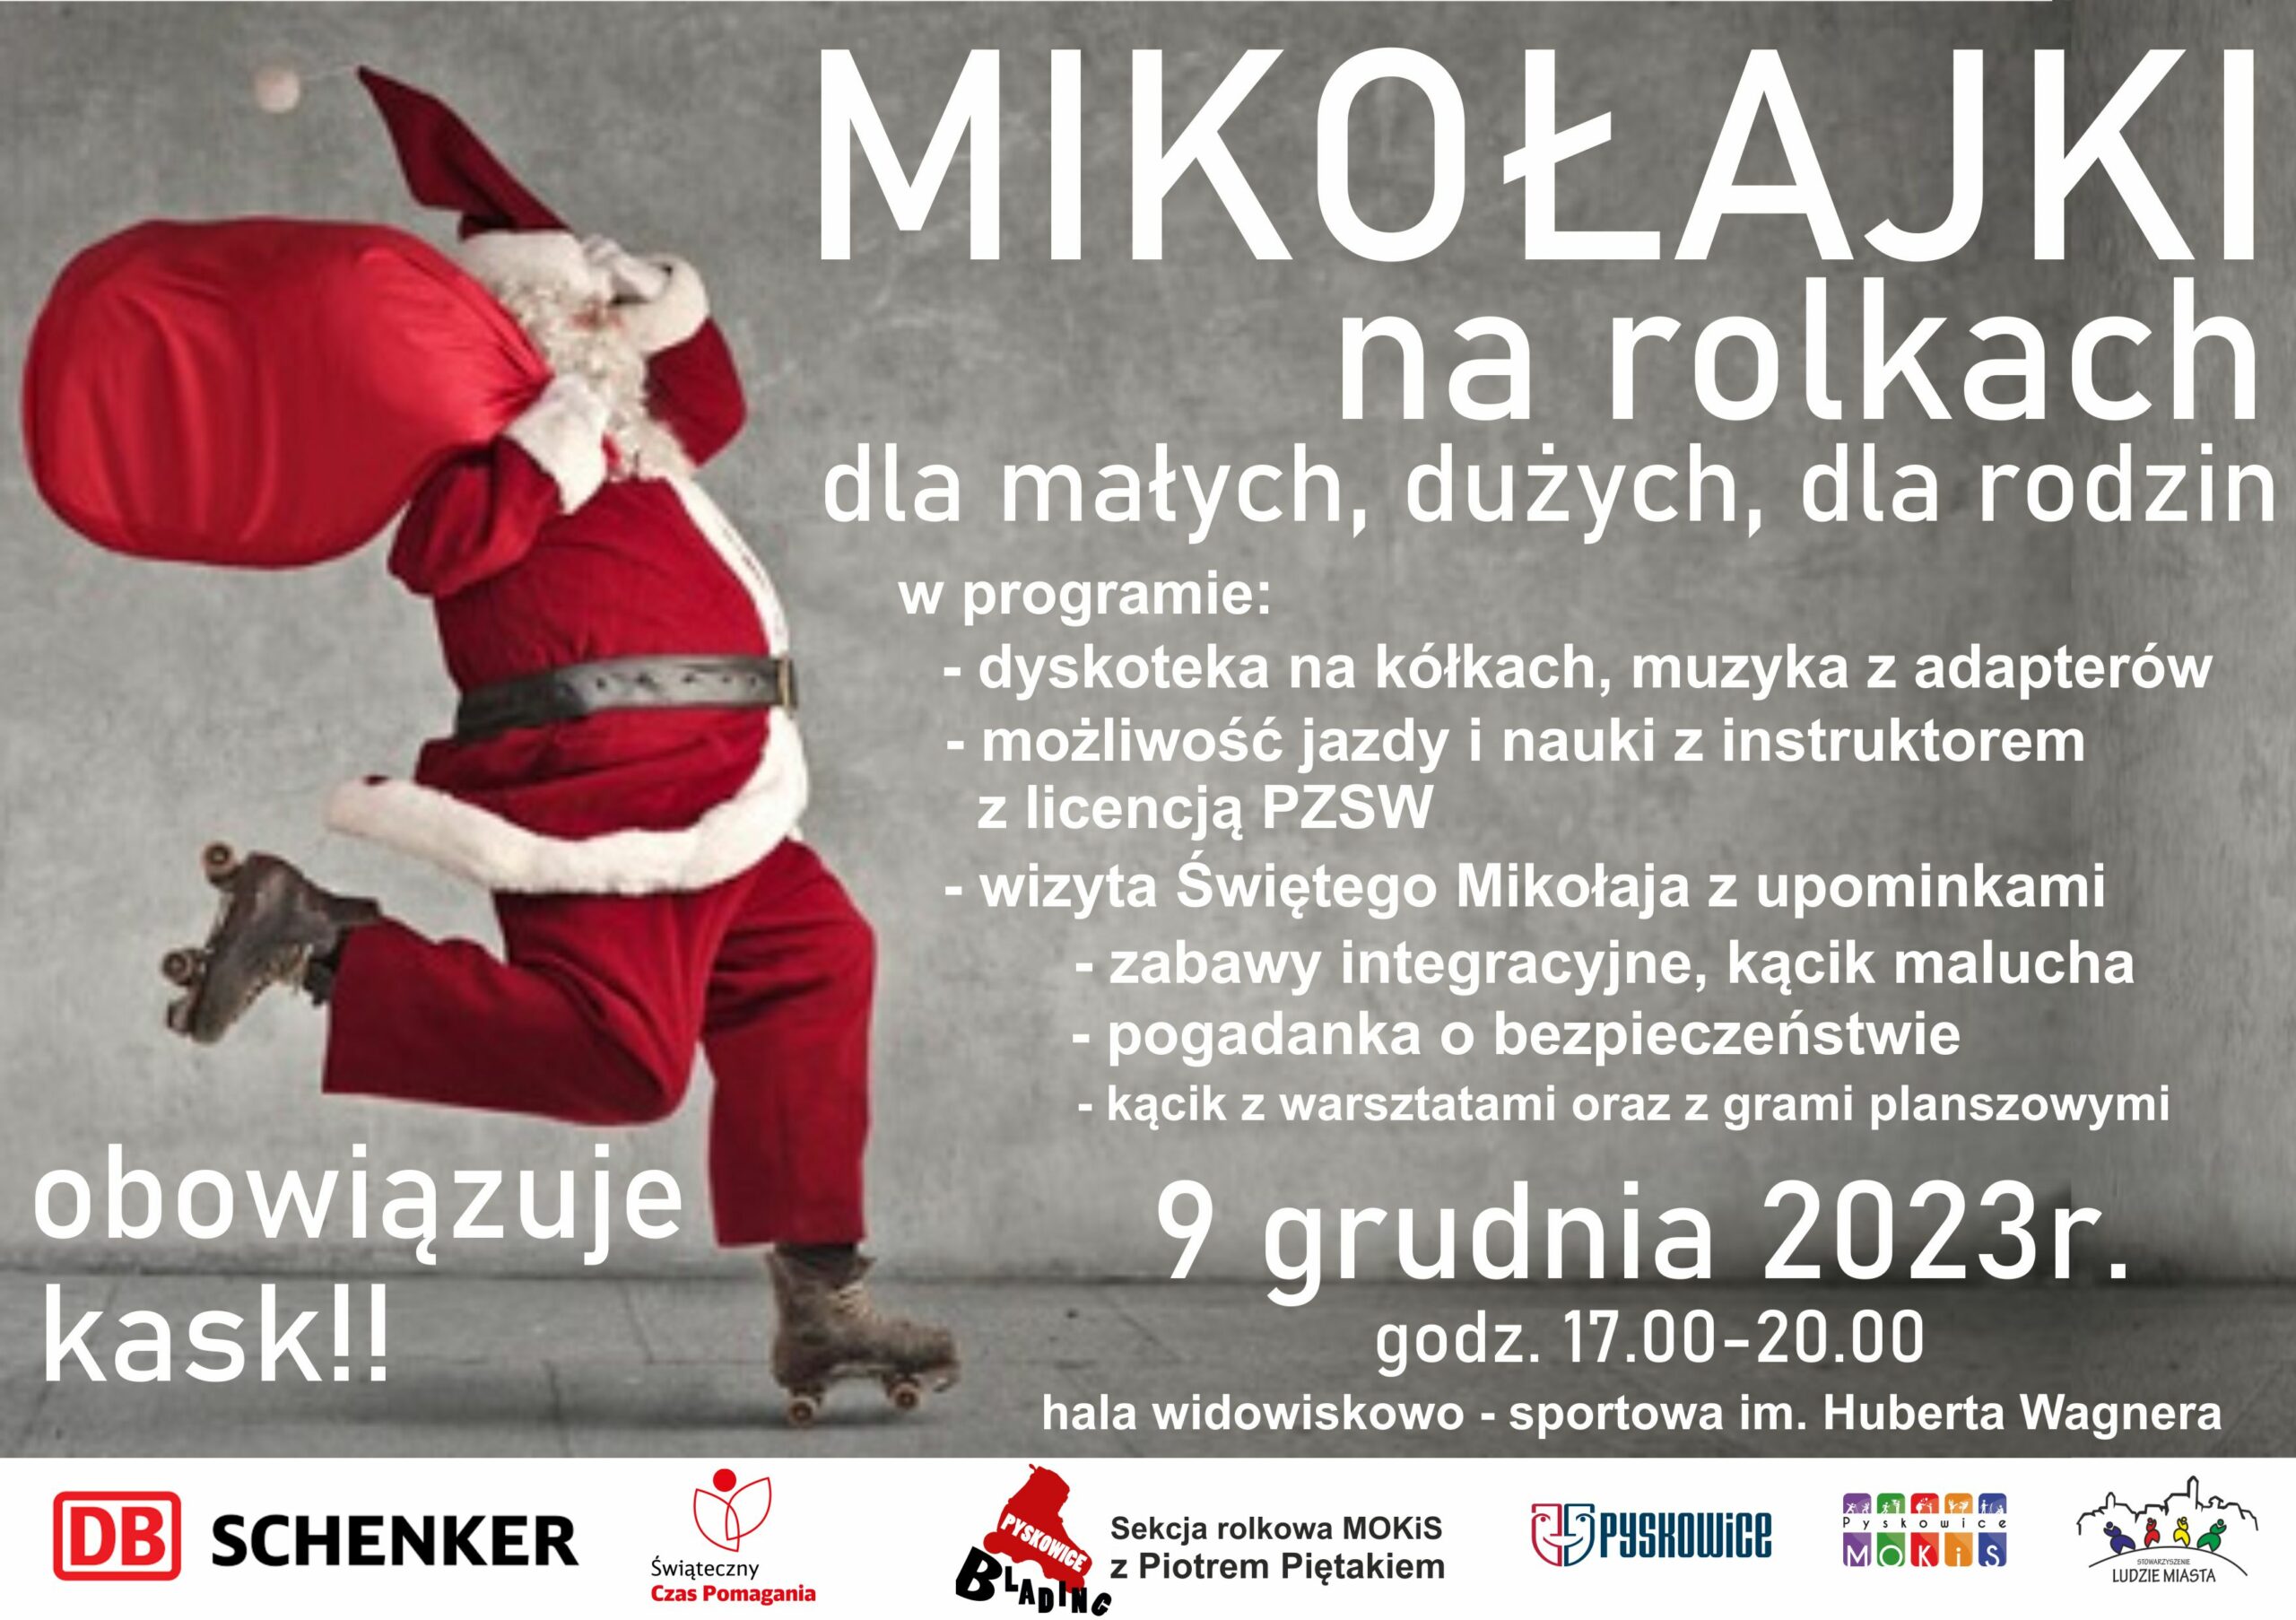 Plakat promujący Mikołajki na rolkach